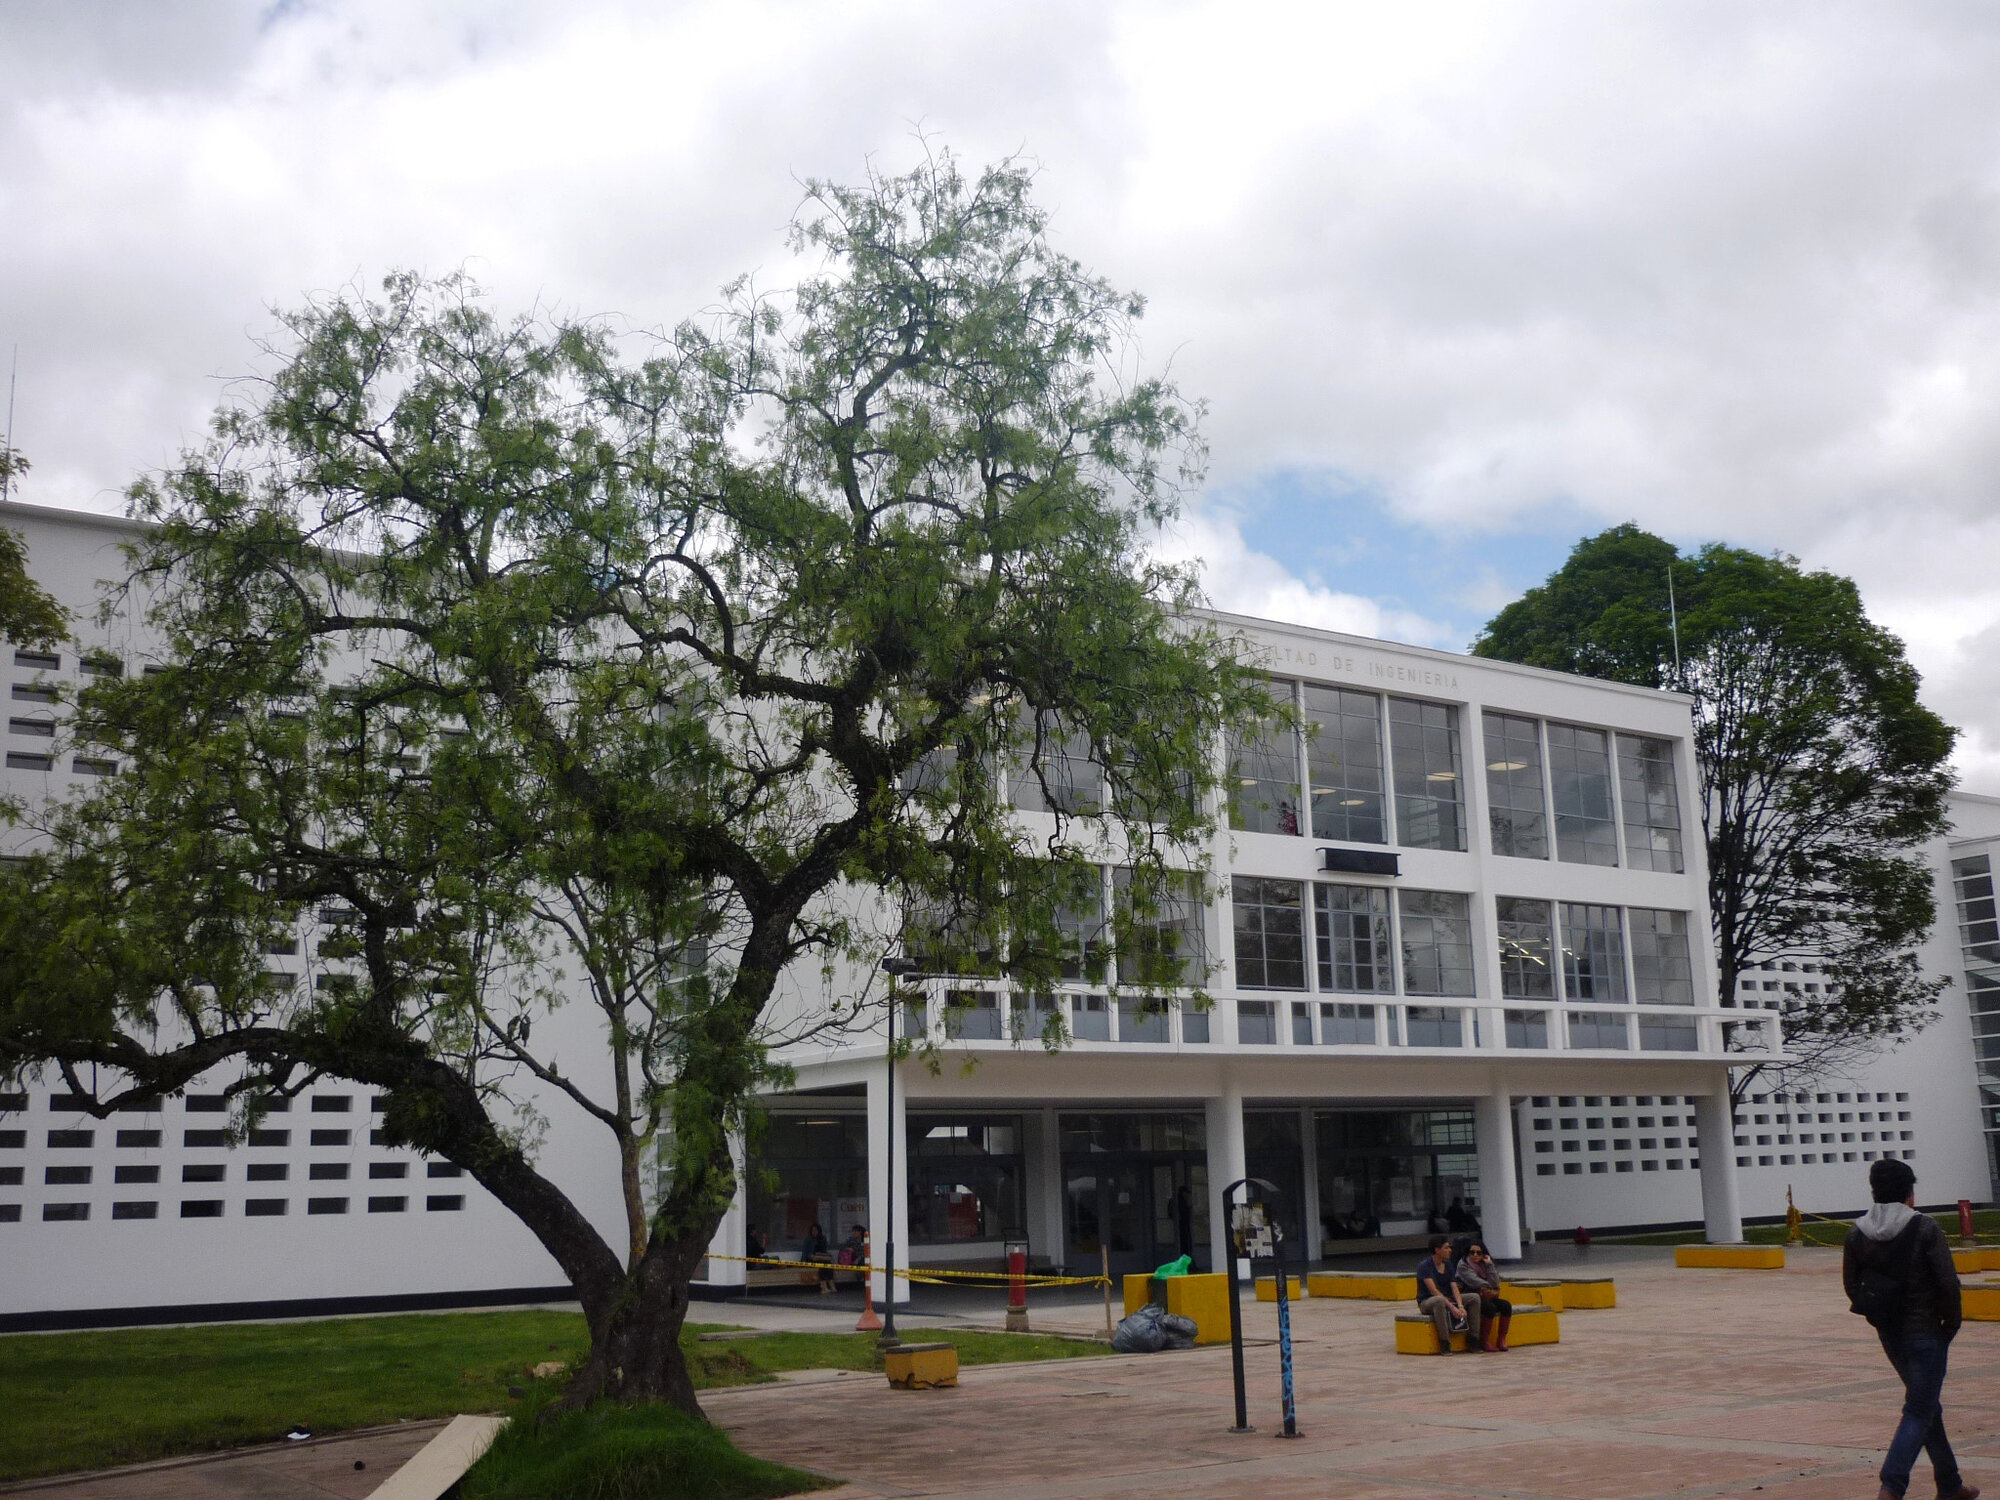 La exposición está ubicada en el hall central del Edificio Insignia Julio Garavito Armero de la Facultad de Ingeniería de la U.N.